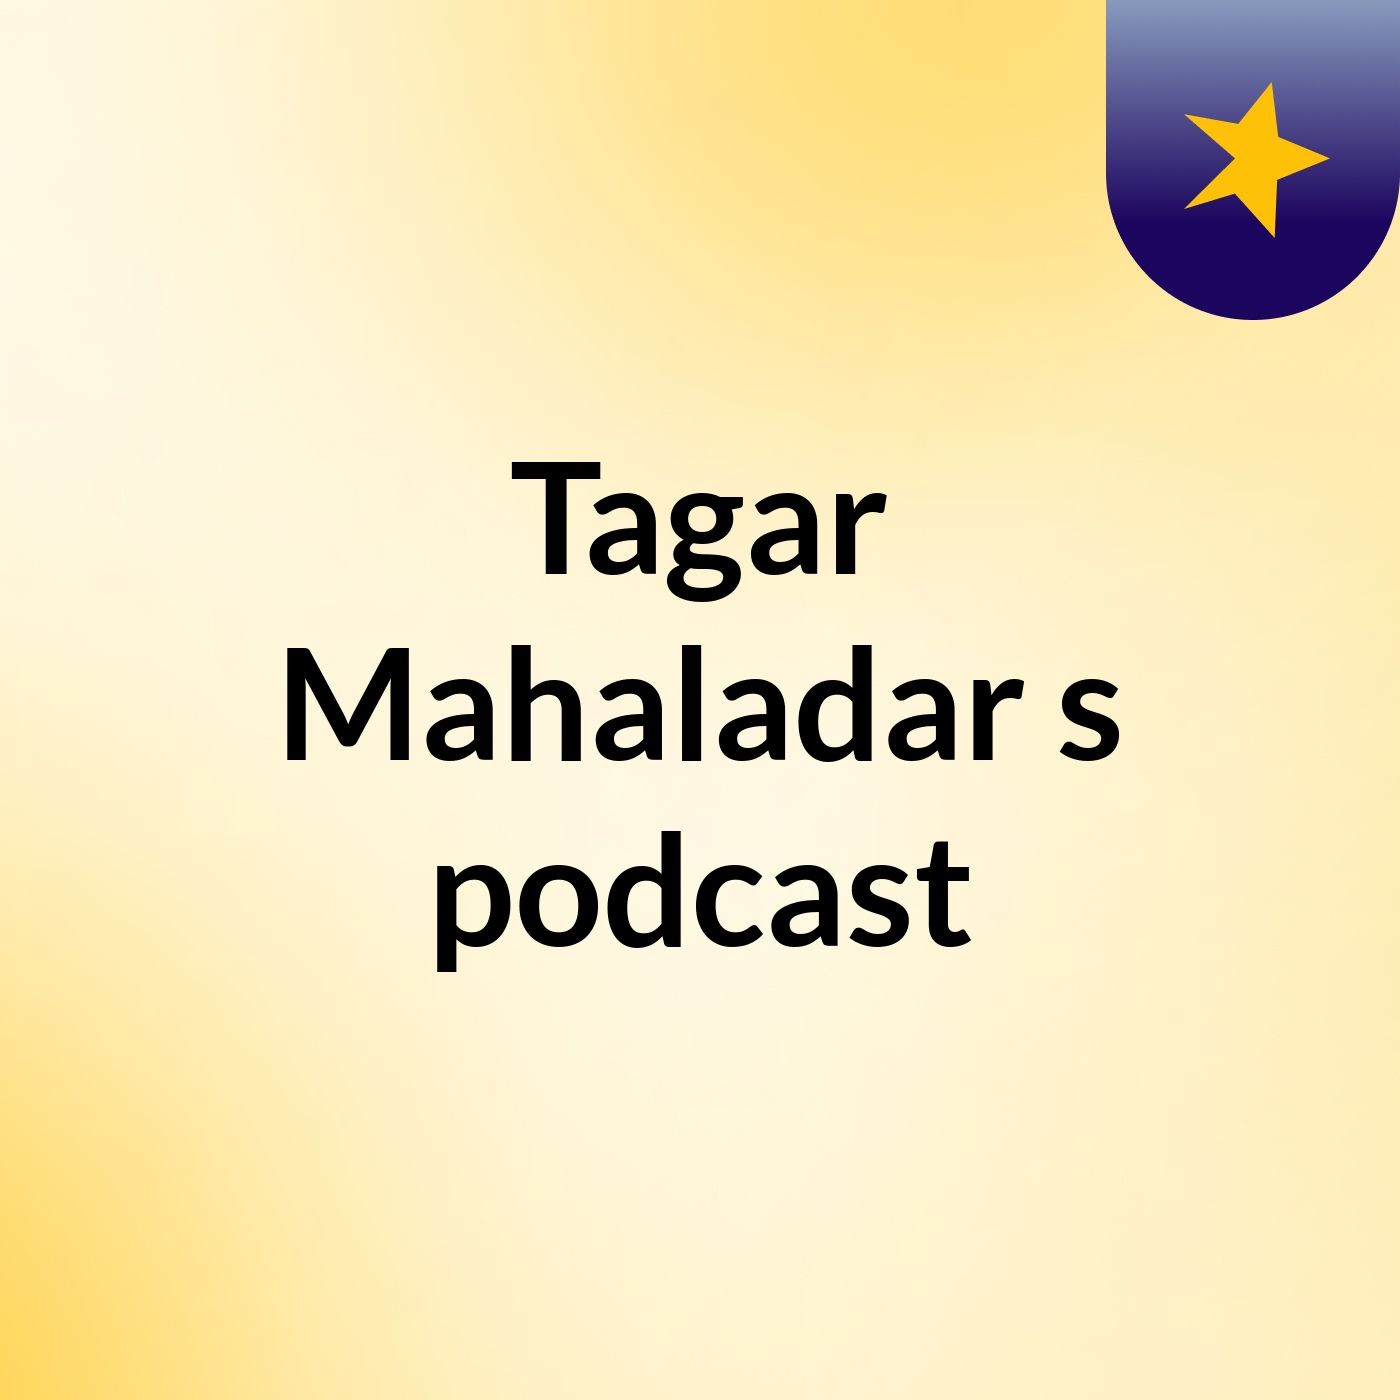 Tagar Mahaladar's podcast